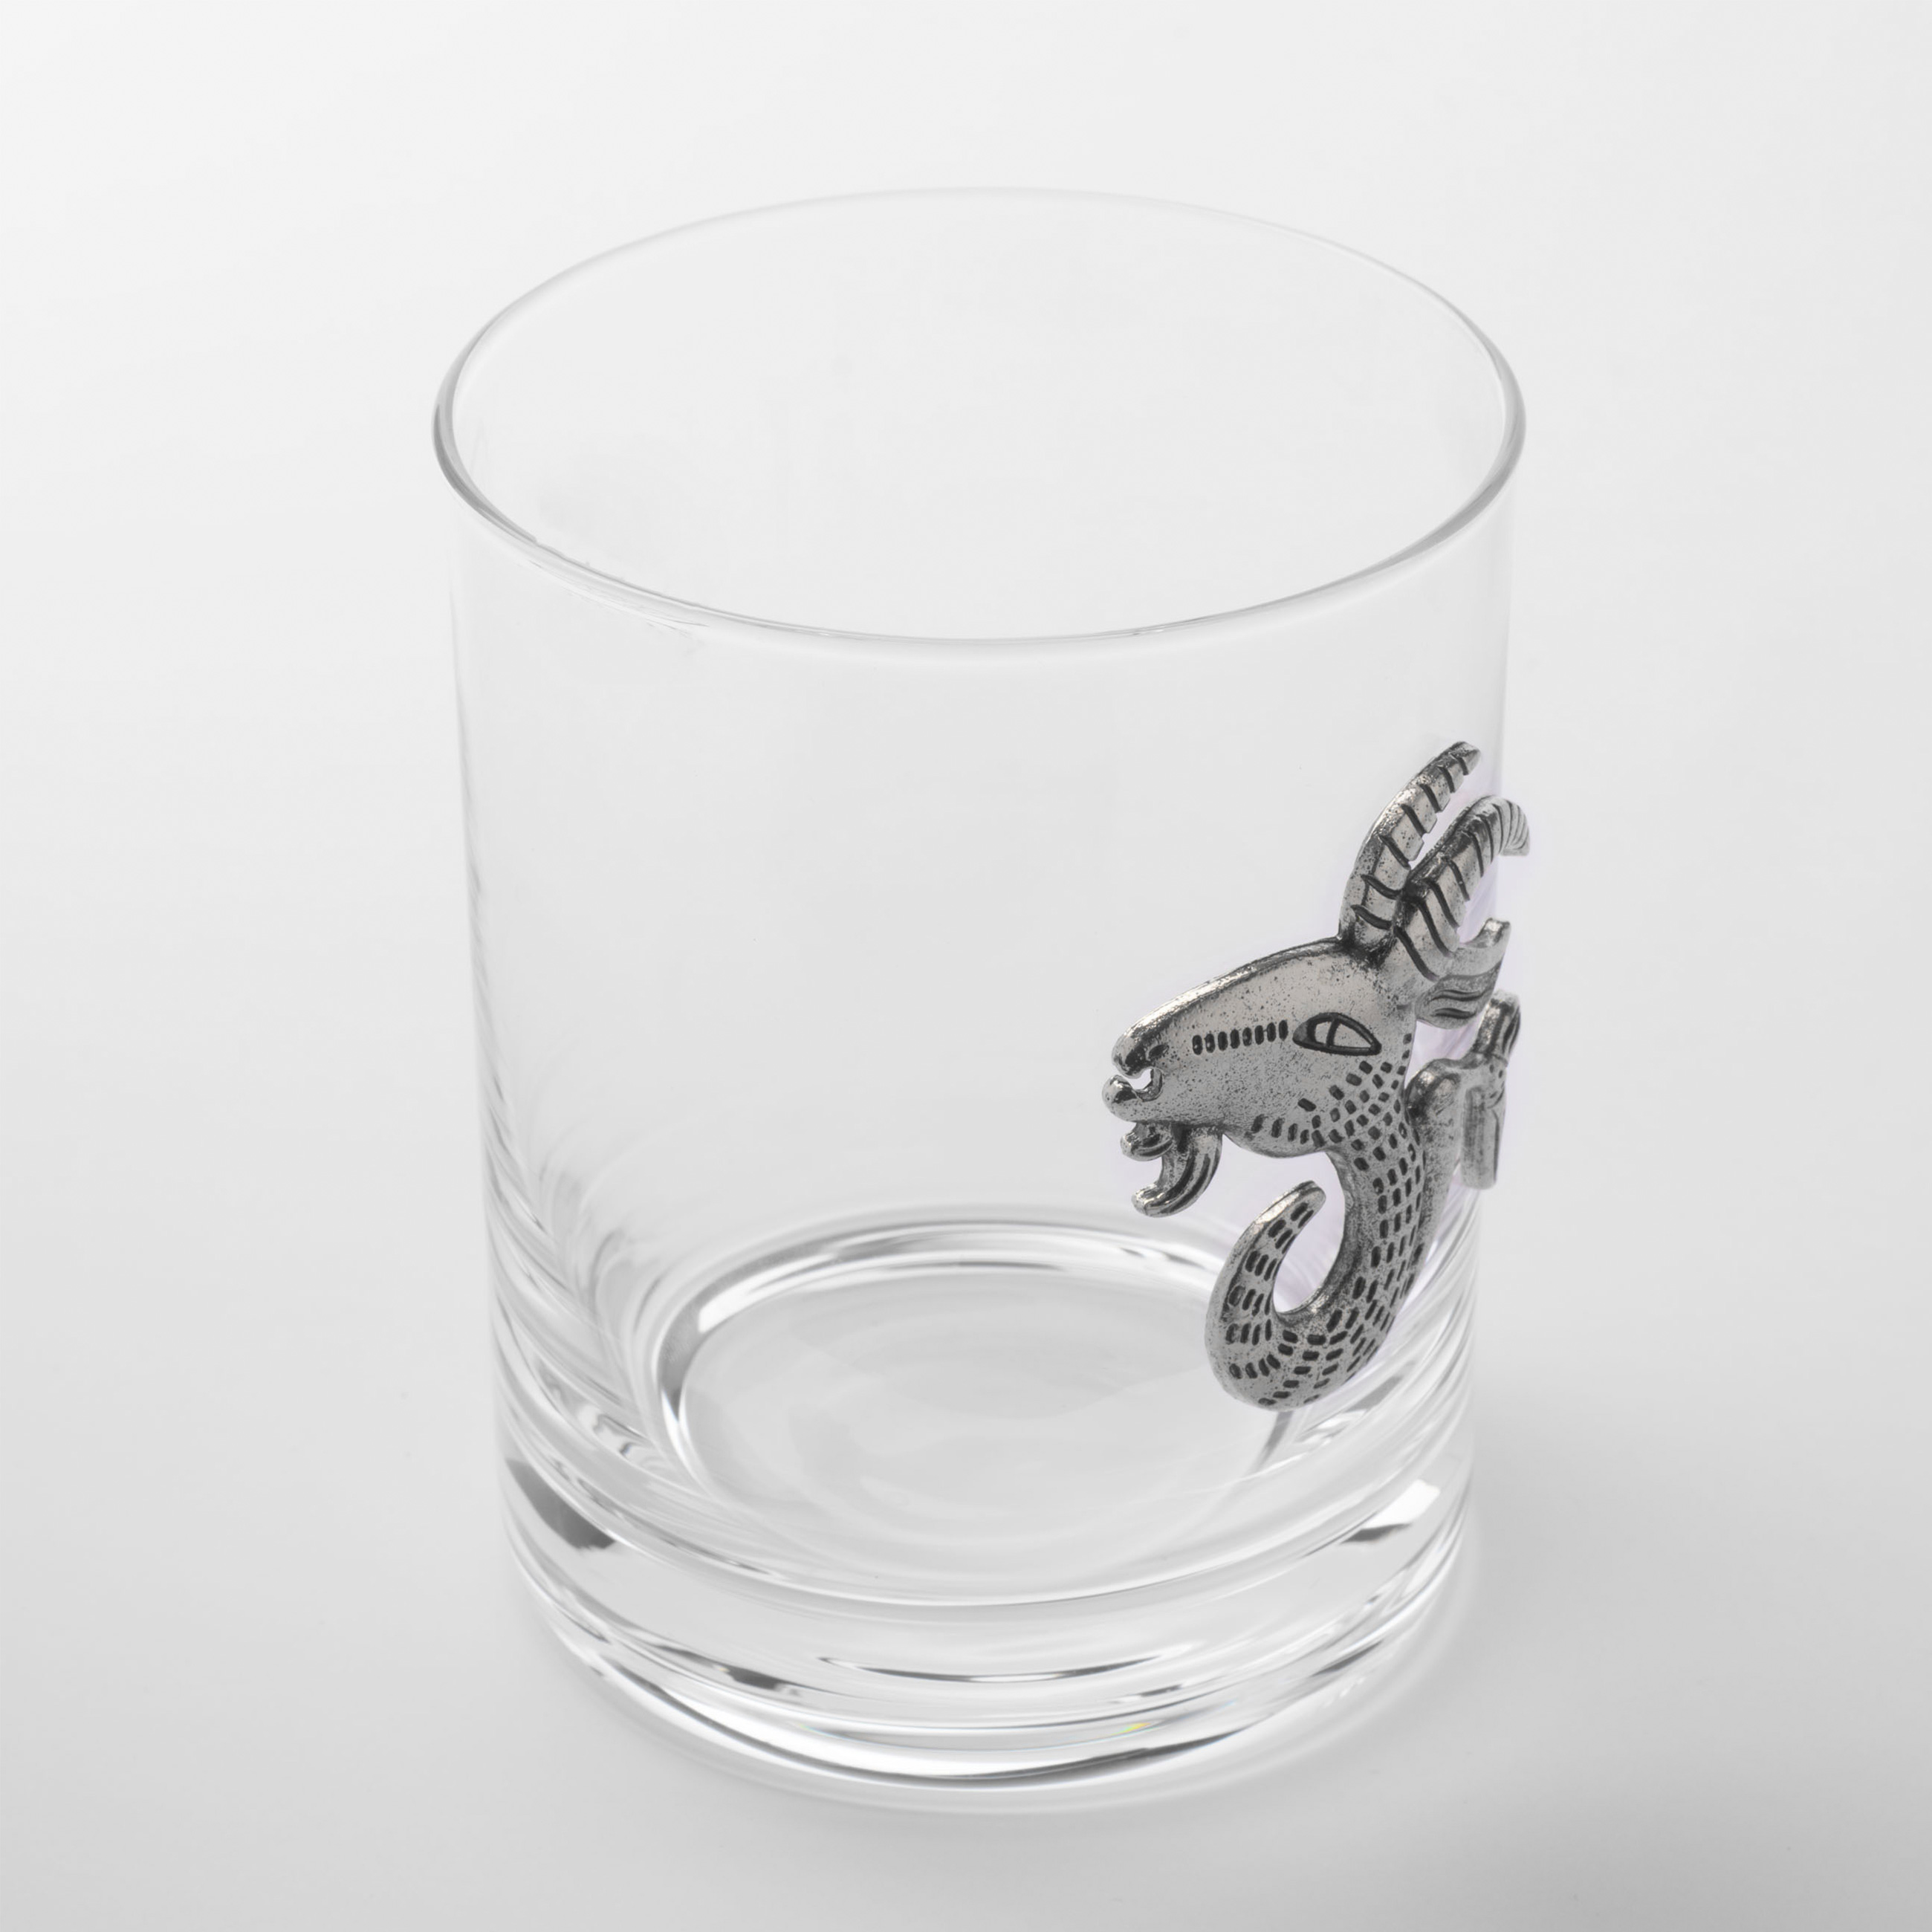 Стакан для виски, 340 мл, стекло/металл, серебристый, Козерог, Zodiac изображение № 3